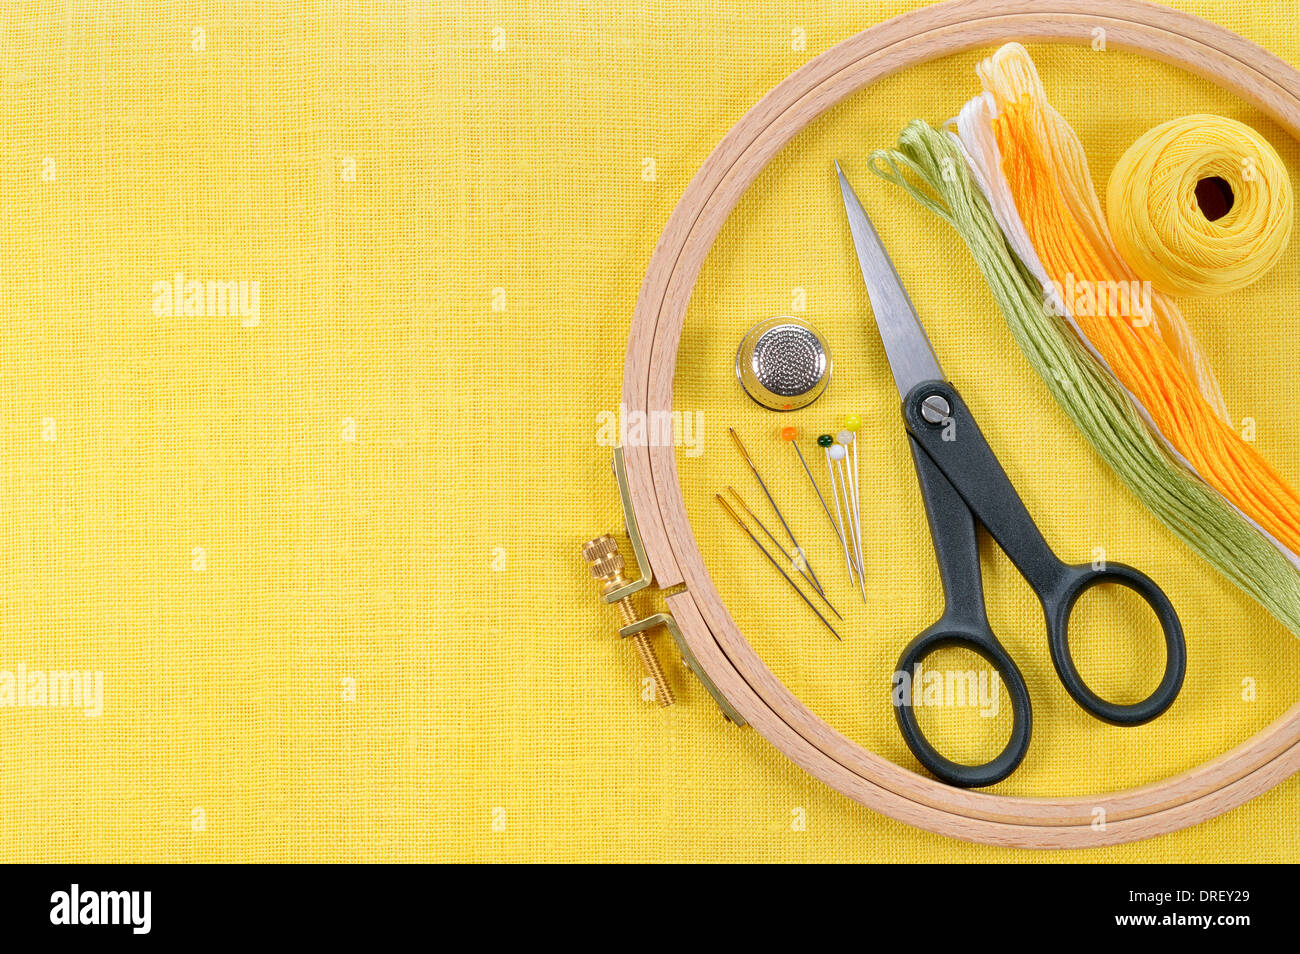 Ricamo e punto croce accessori giallo su tessuto di lino. Cerchio da ricamo, forbici, filo, aghi, ditale. Copia dello spazio. Foto Stock